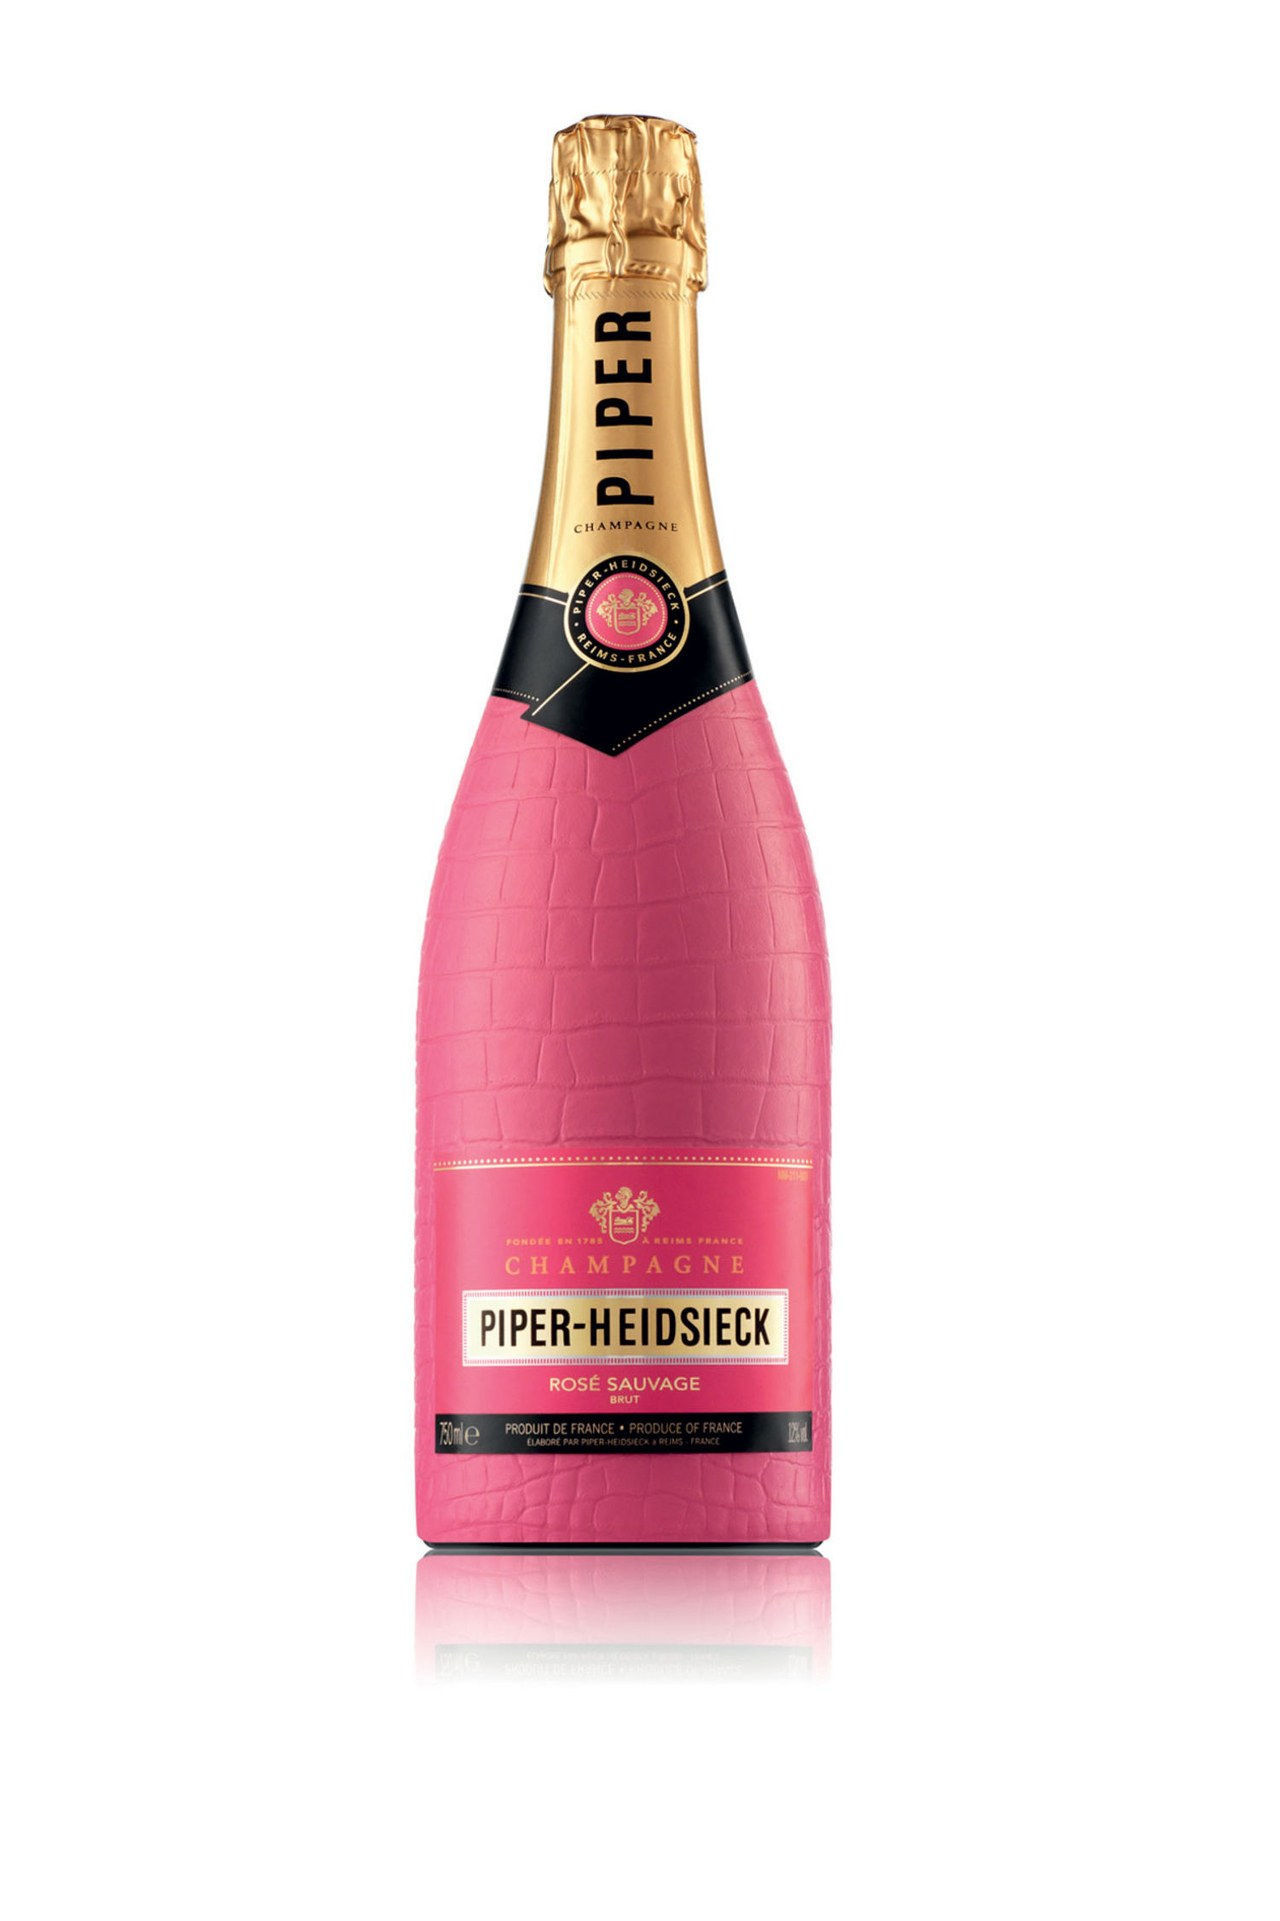 吹笛者 Heidsieck Bodyguard Rose Sauvage Champagne in Hot Pink Croc Bottle